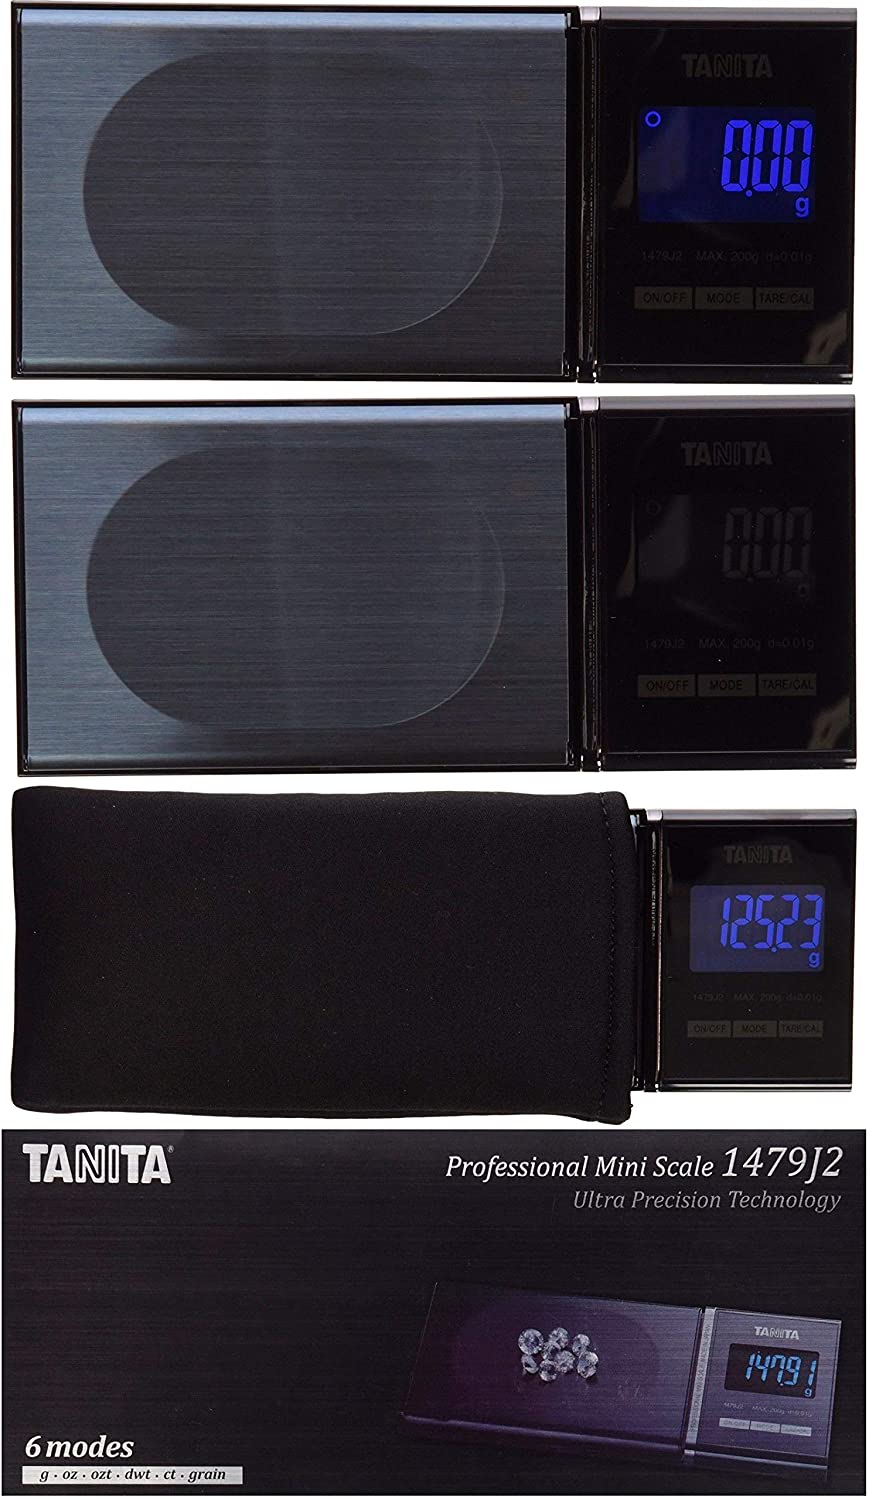 Báscula de precisión Tanita 1479j2 (200g x 0.01g) – Teknotronics